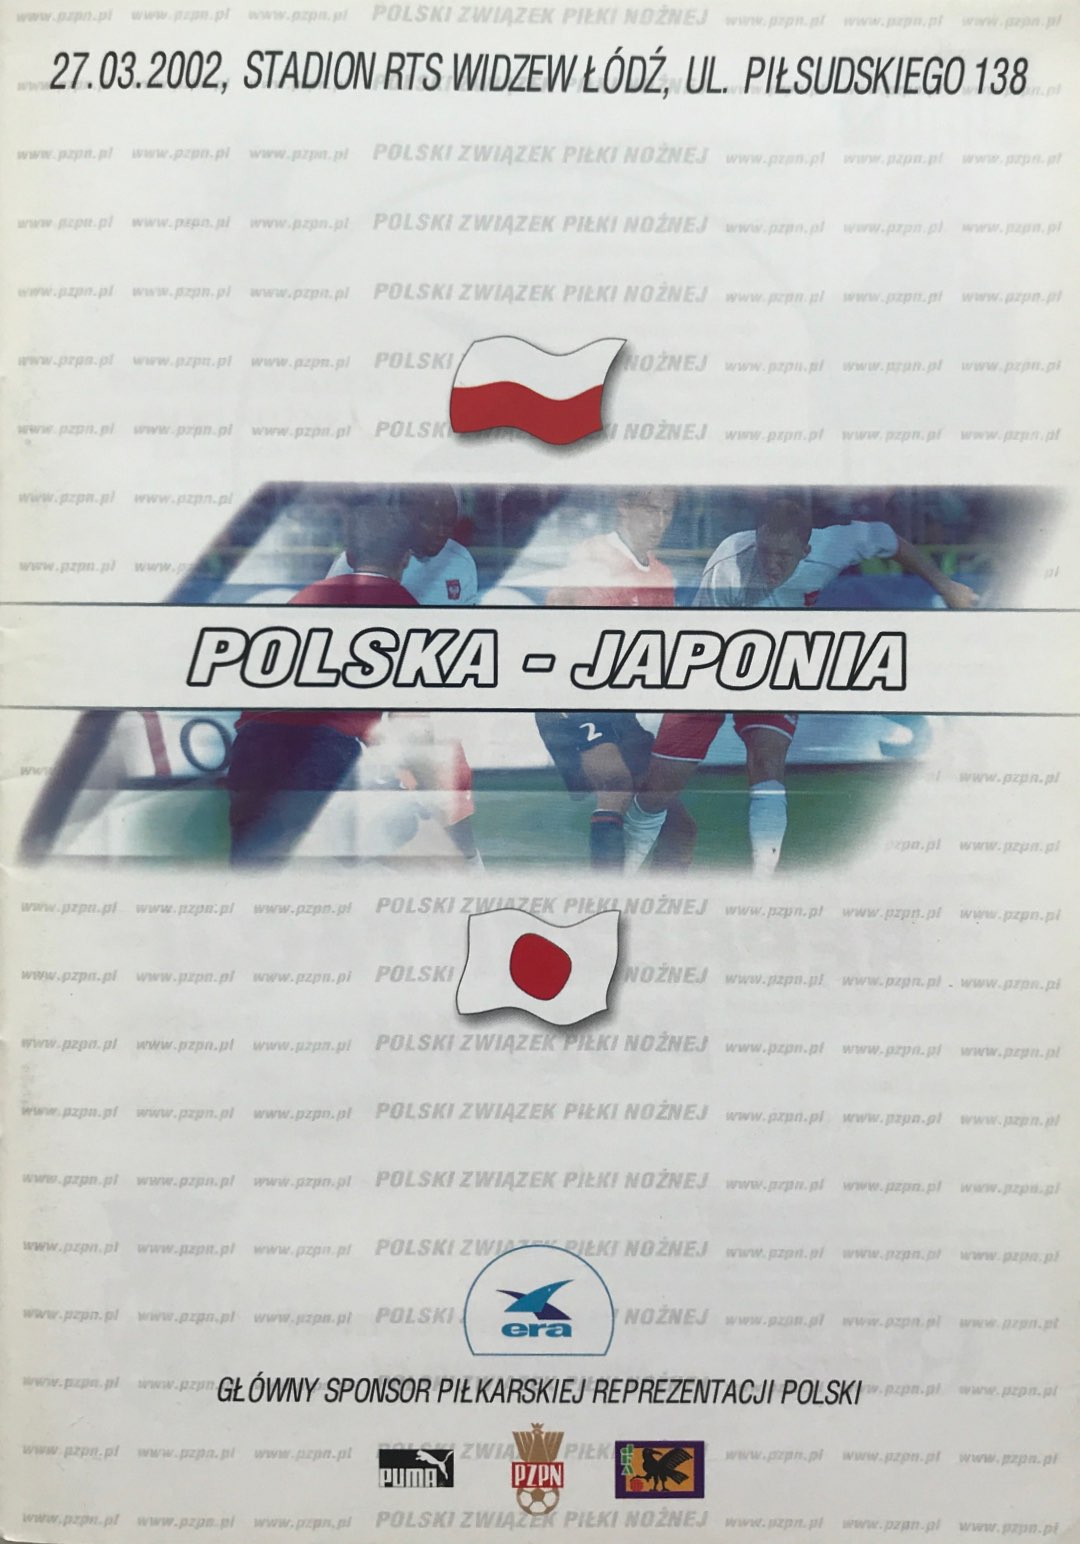 Program meczowy Polska - Japonia 0:2 (27.03.2002).